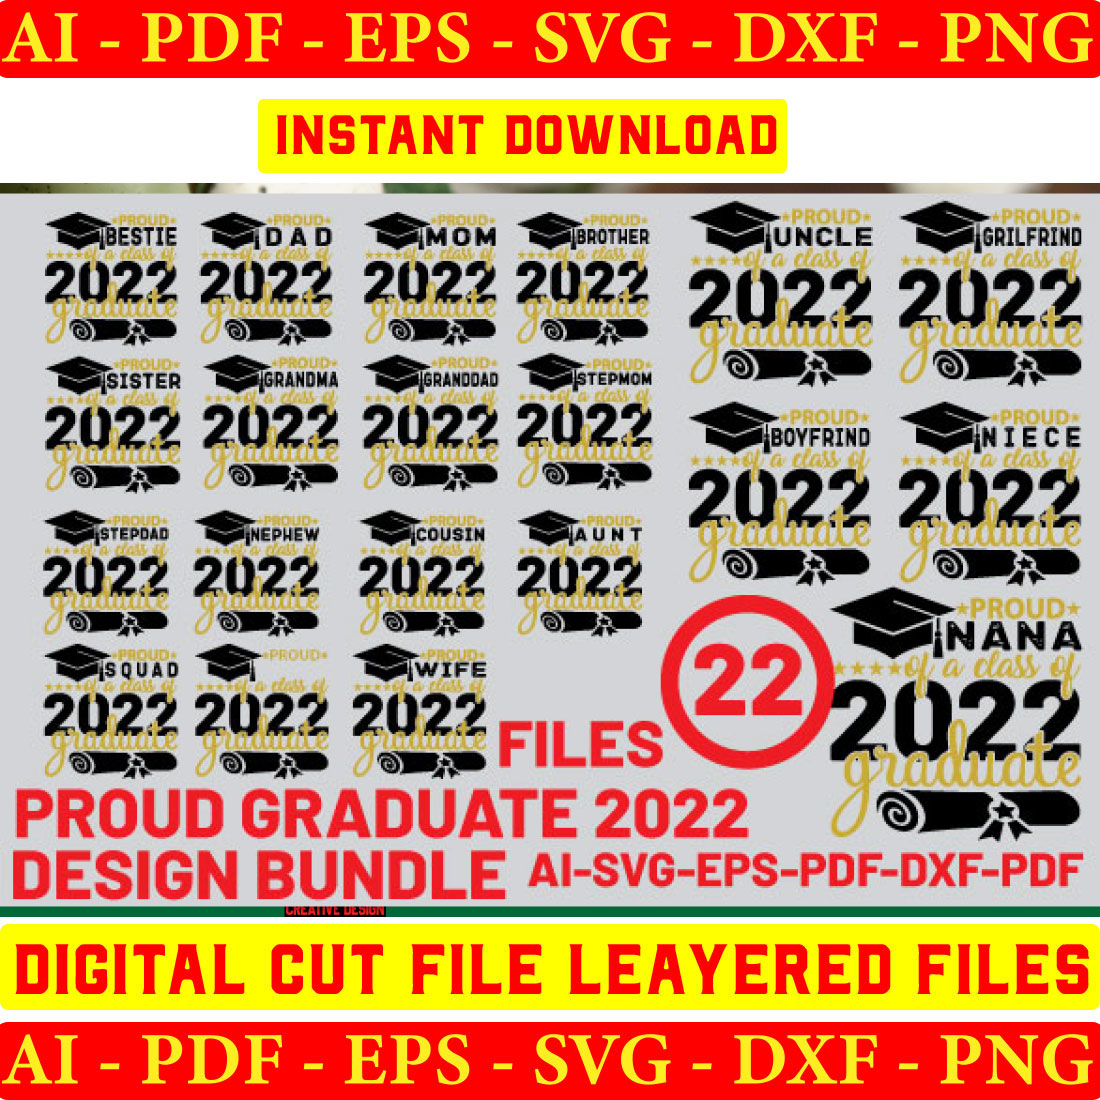 Proud Graduate 2022 Family SVG Bundle cover image.